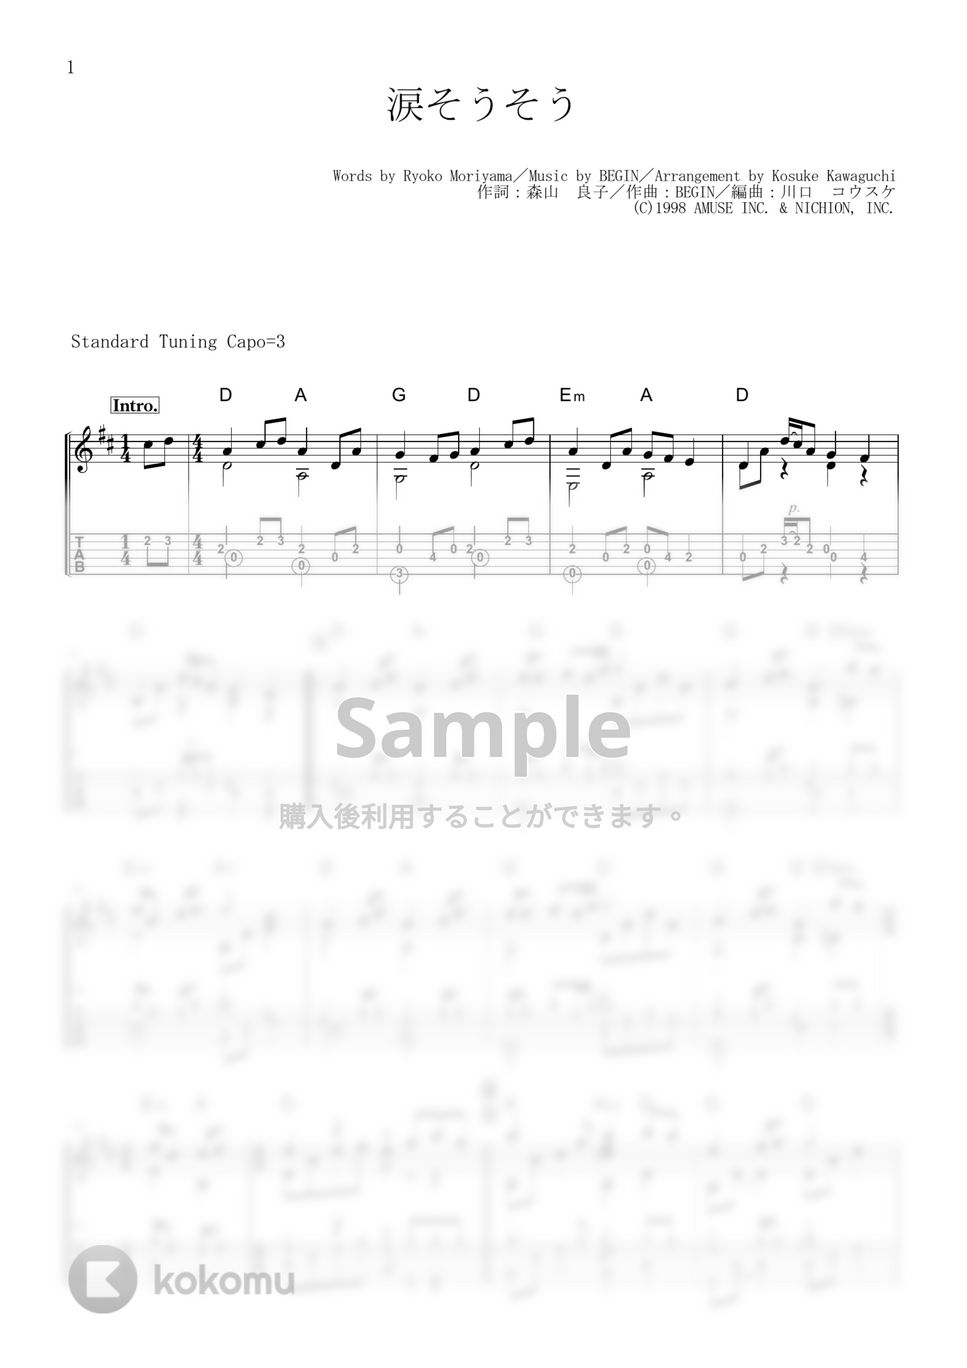 夏川りみ - 涙そうそう (ソロギター、TAB譜付き) by 川口コウスケ